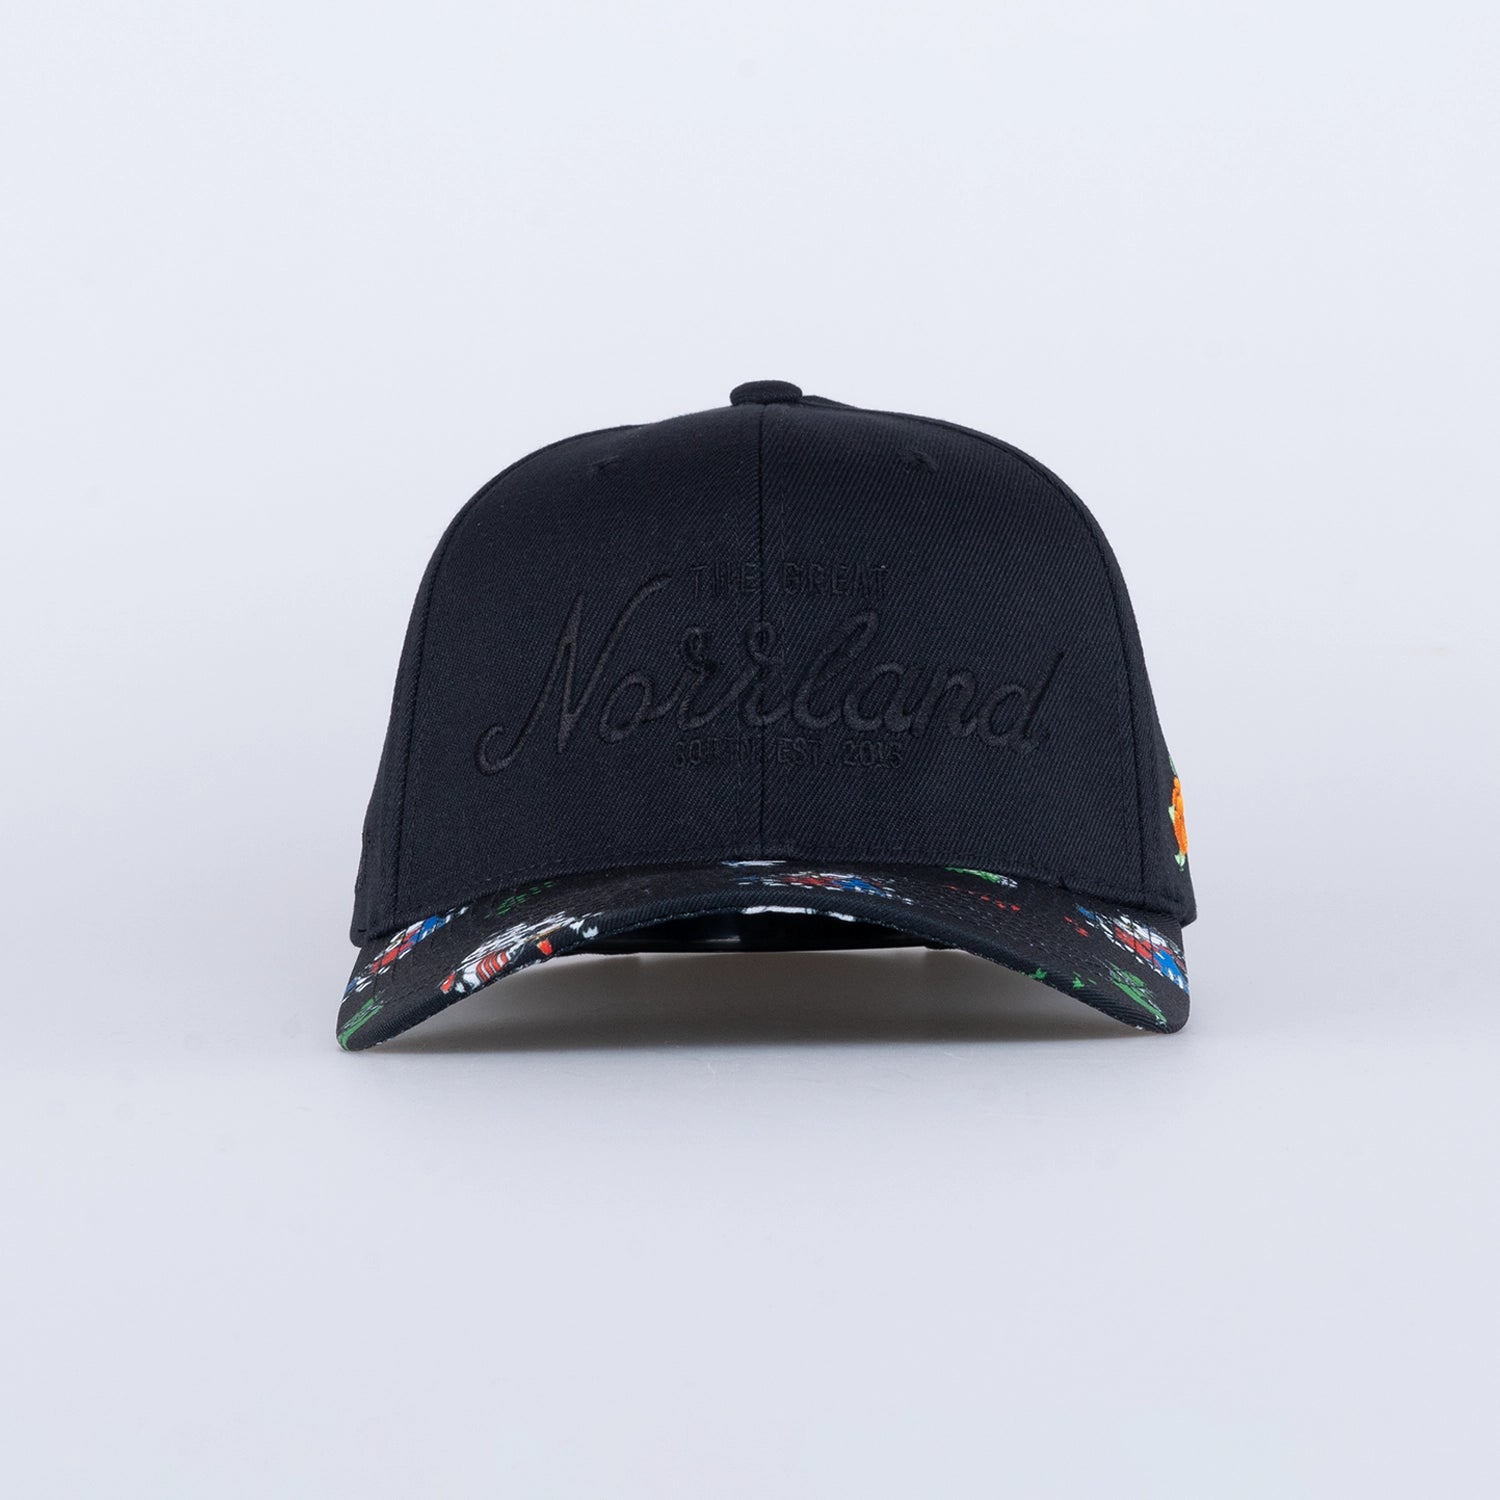 GREAT NORRLAND 120 CAP - MUMIN BLACK